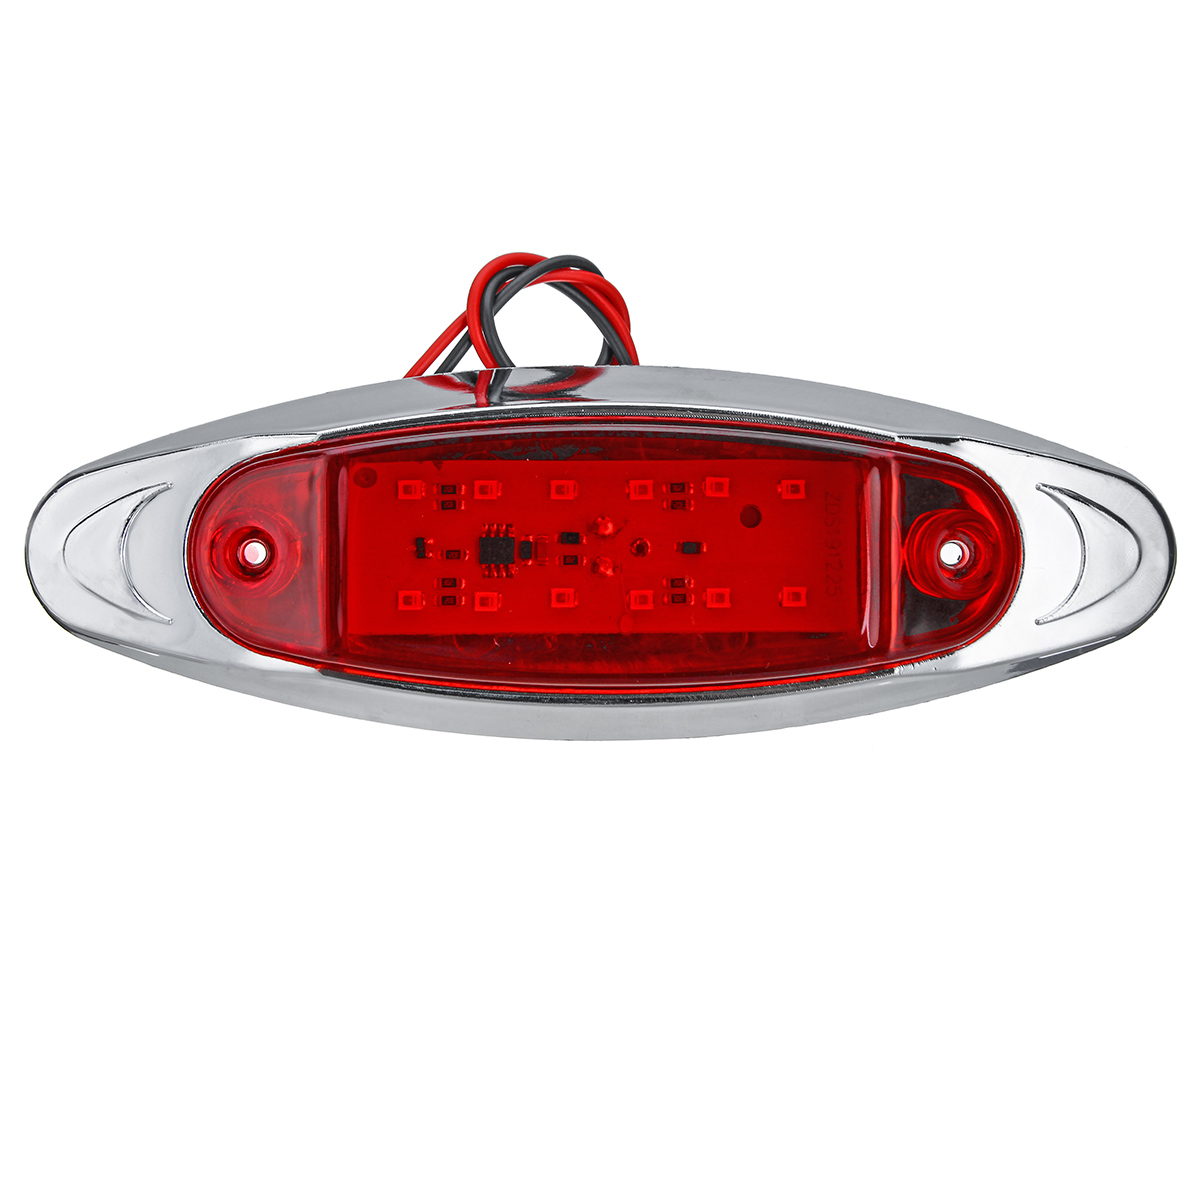 24V LED Seitenmarkierungsleuchte Flash Strobe Notfallwarnleuchte für Boot Auto LKW Anhänger